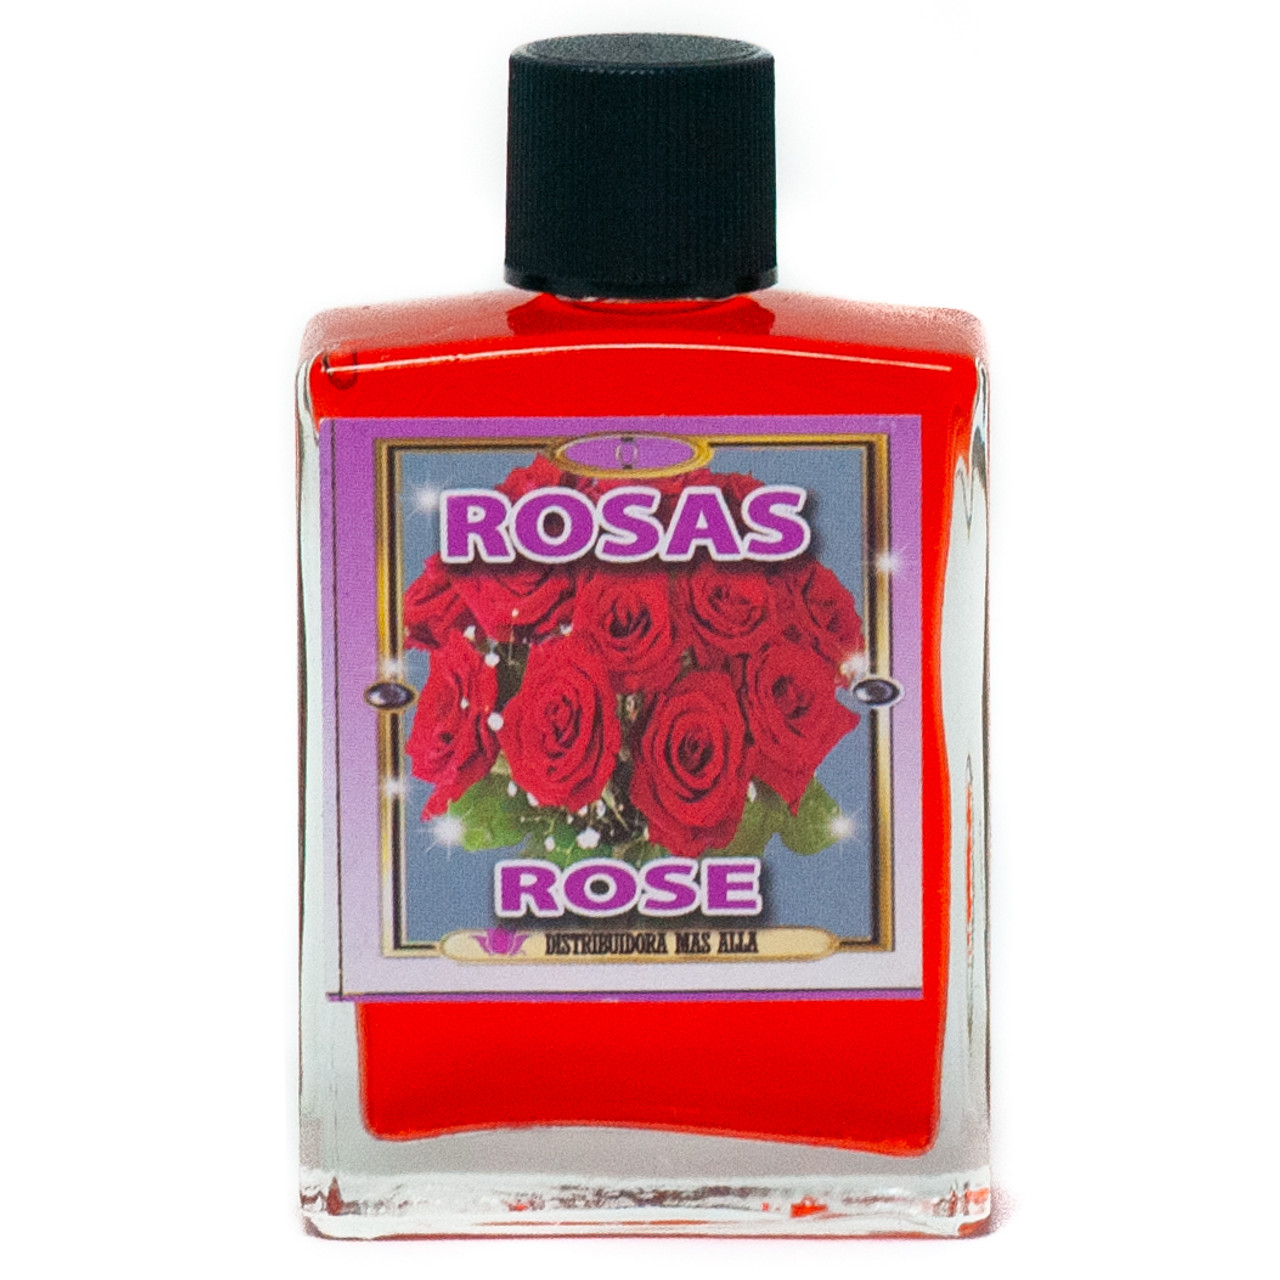 Rosas - Rose  Esoteric Perfume -